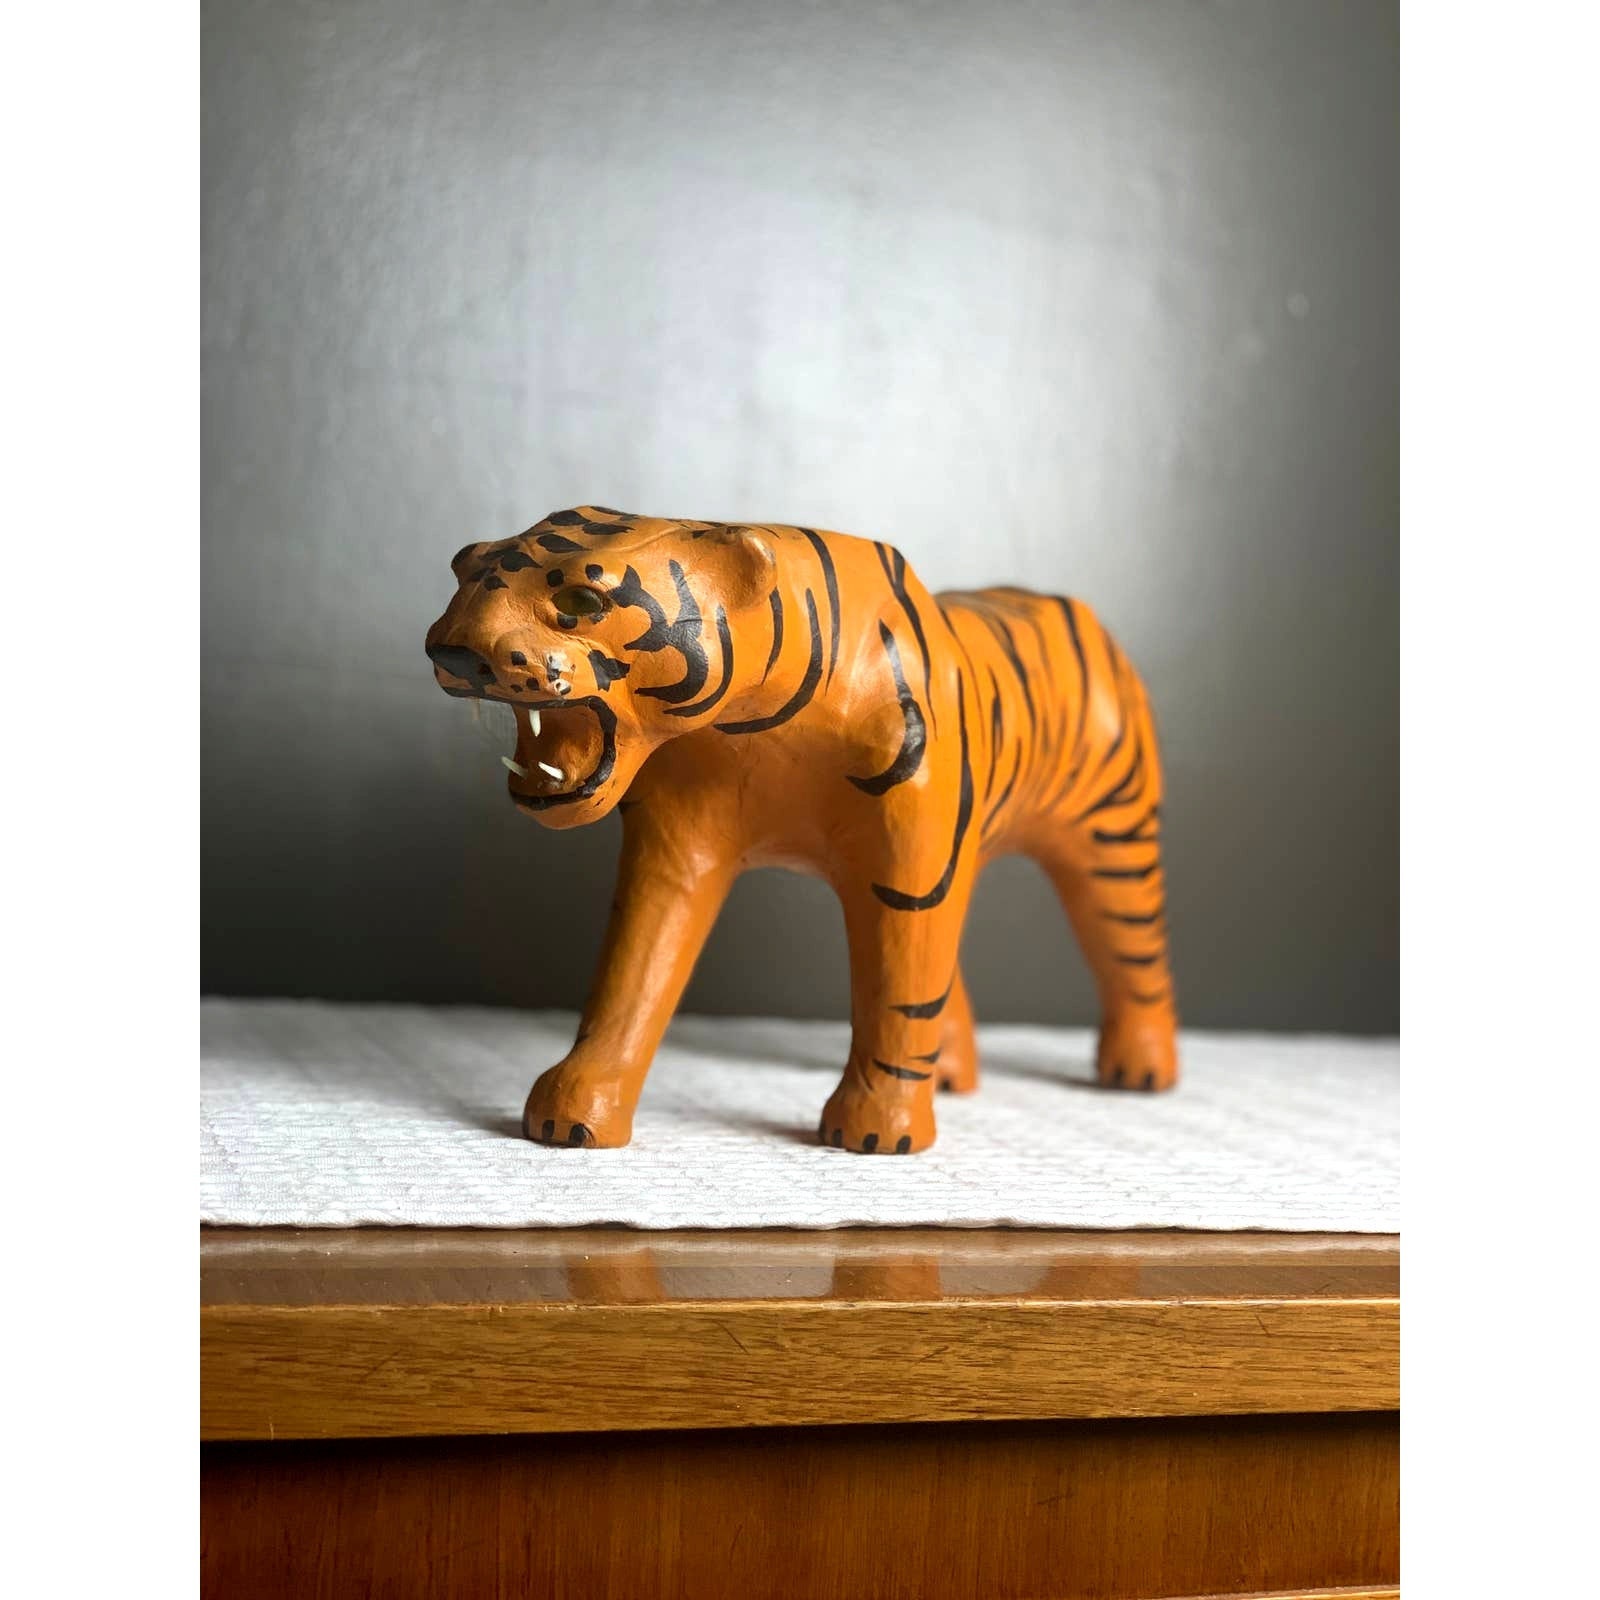 Large Vintage Leather Tiger Statue 15 Long 9 1/2 